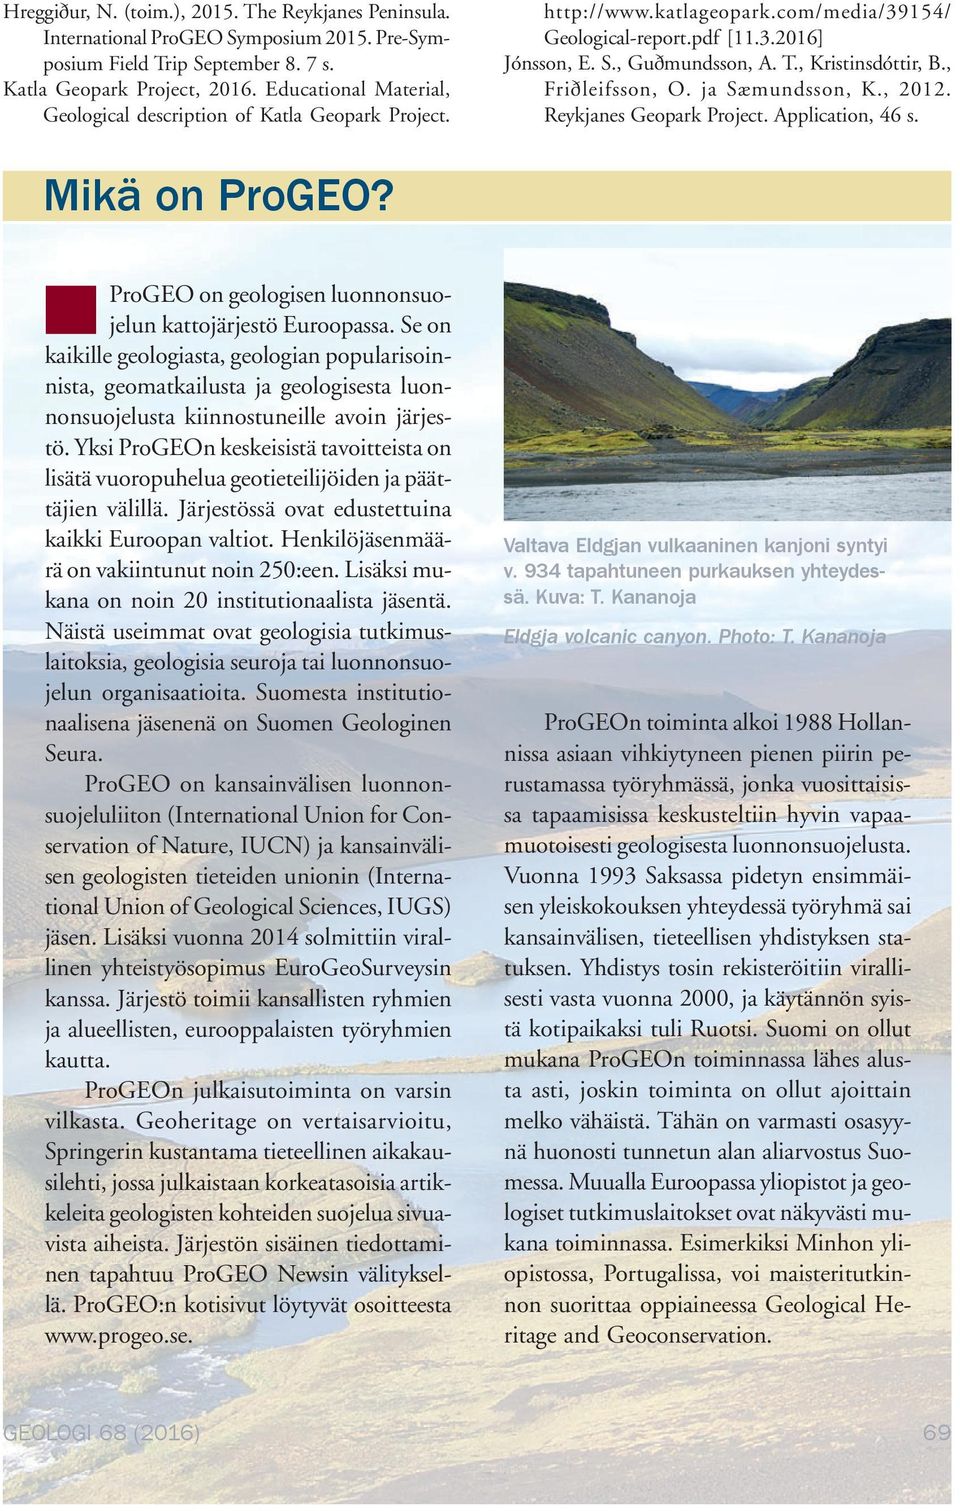 , Friðleifsson, O. ja Sæmundsson, K., 2012. Reykjanes Geopark Project. Application, 46 s. Mikä on ProGEO? ProGEO on geologisen luonnonsuojelun kattojärjestö Euroopassa.